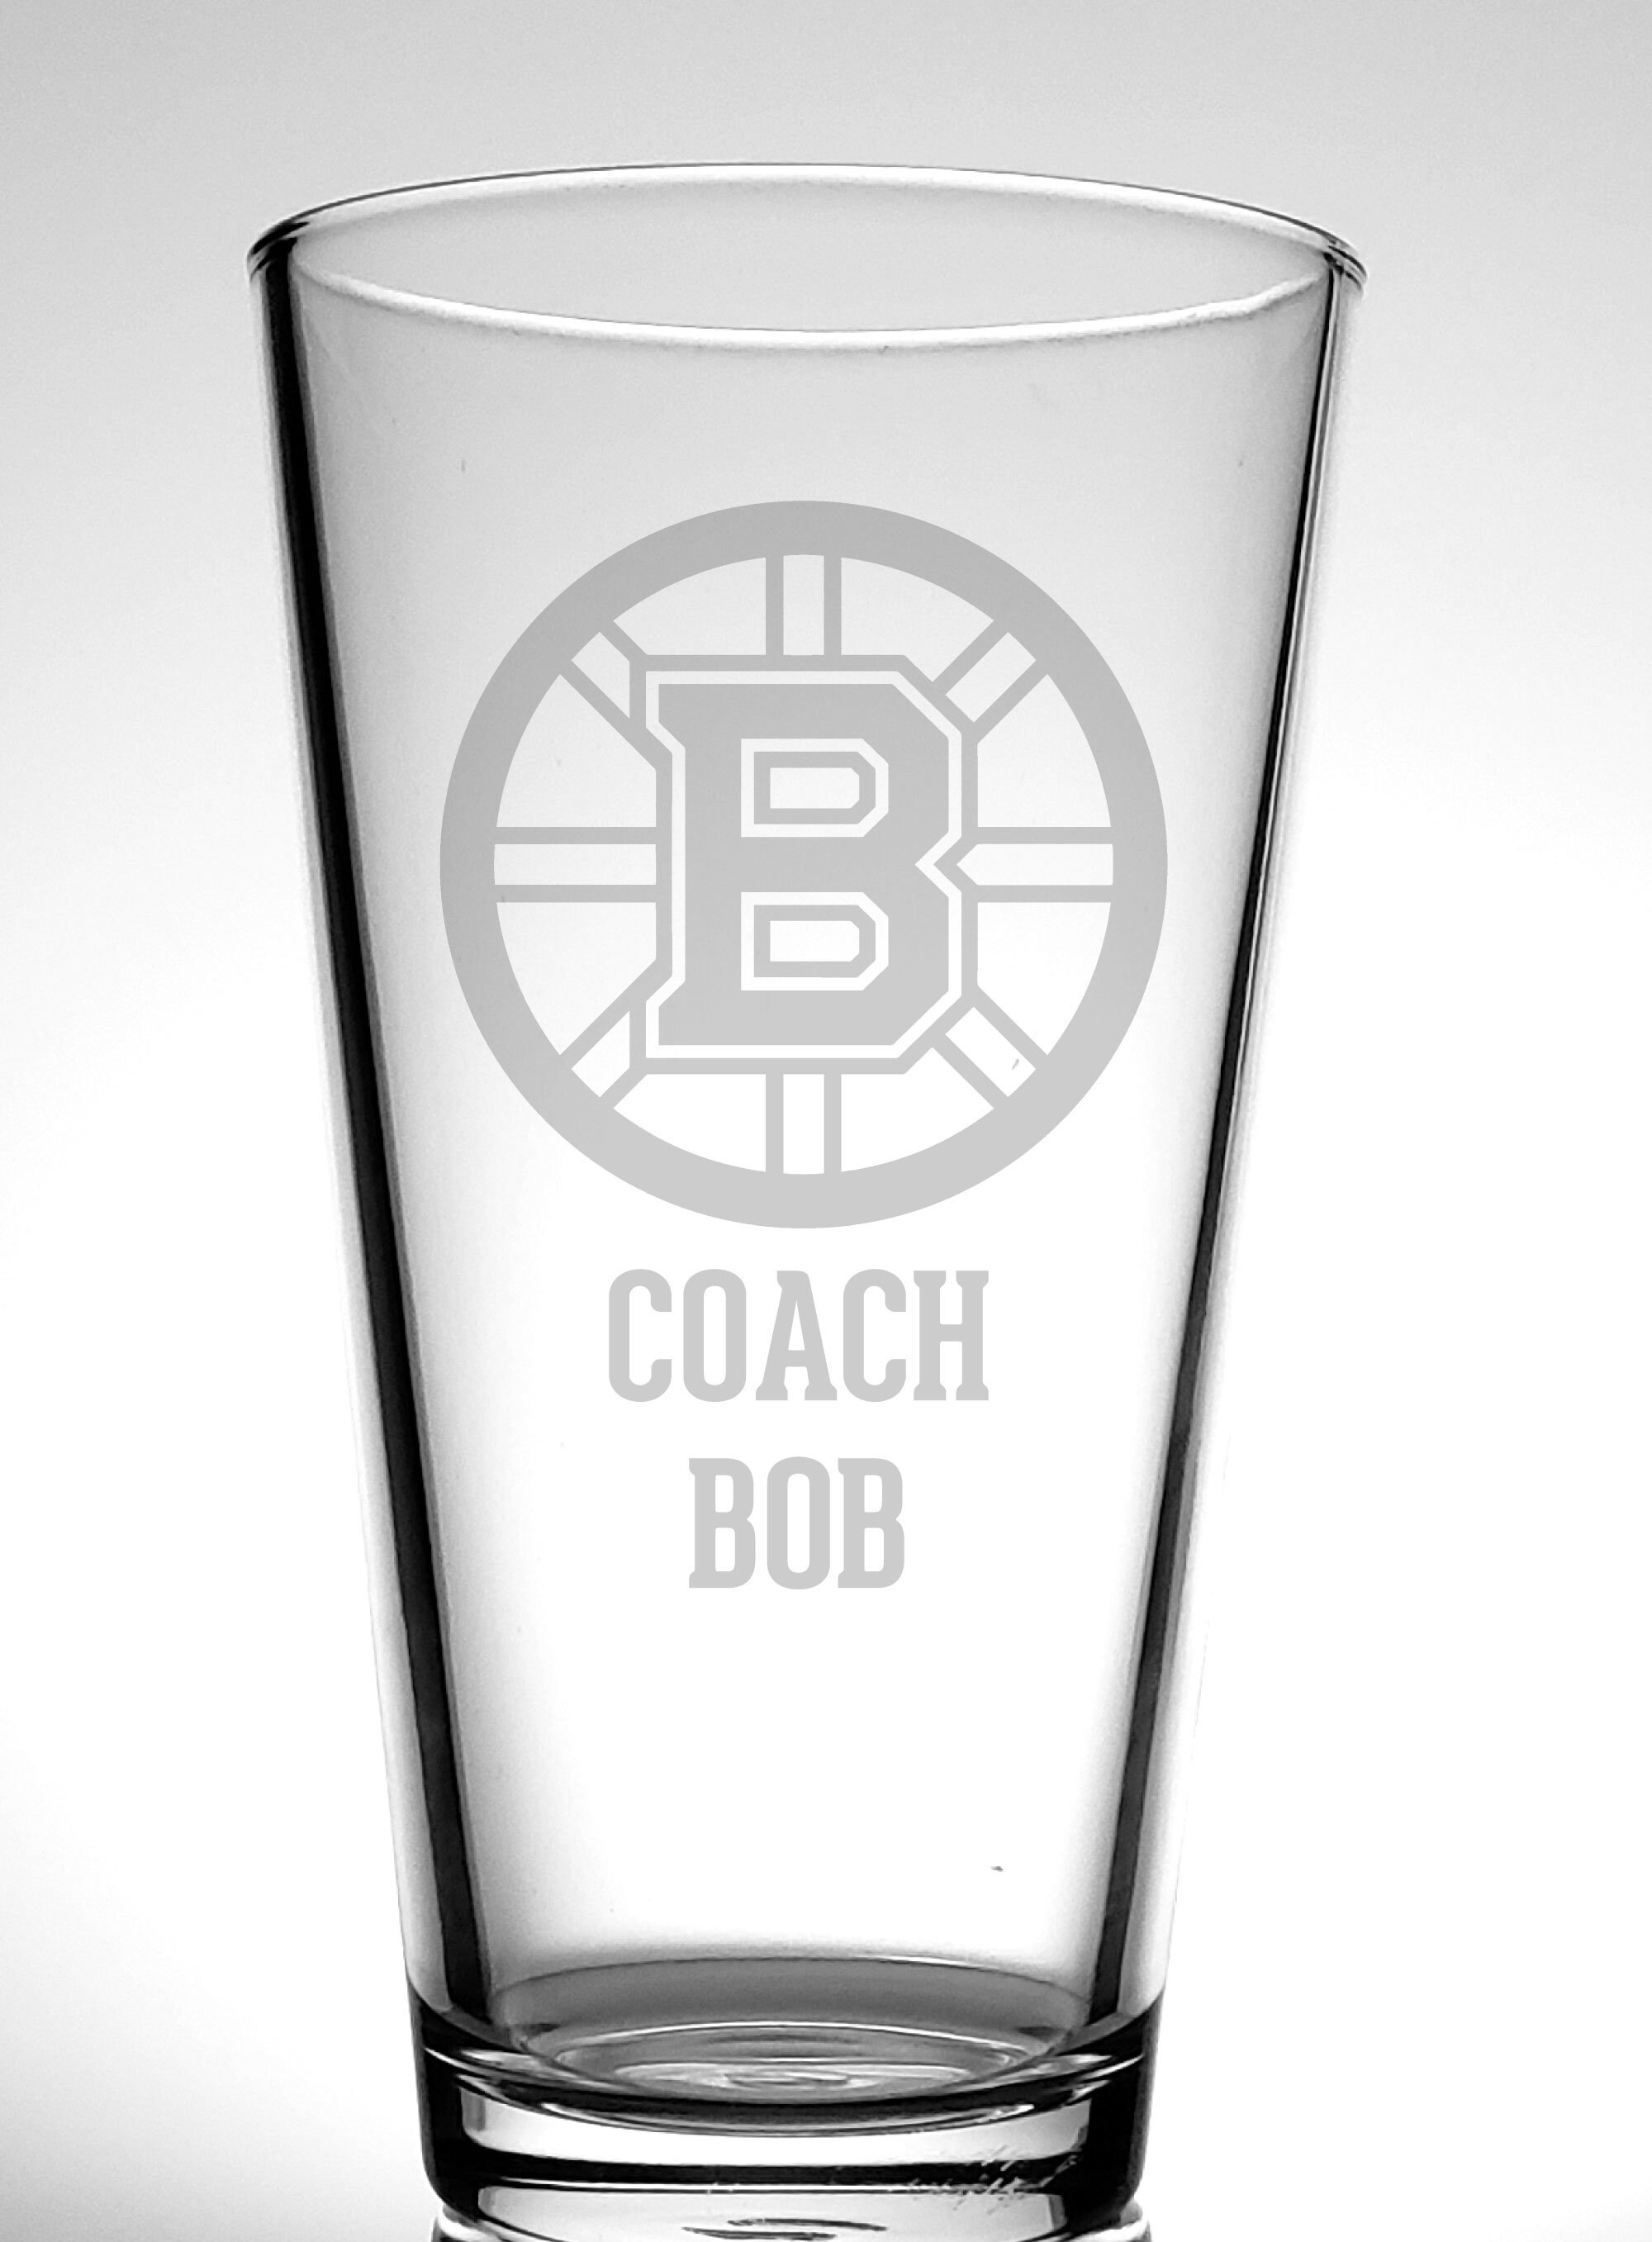 Boston Bruins Fan Fest: Dunking Blackhawks, personalizing beer